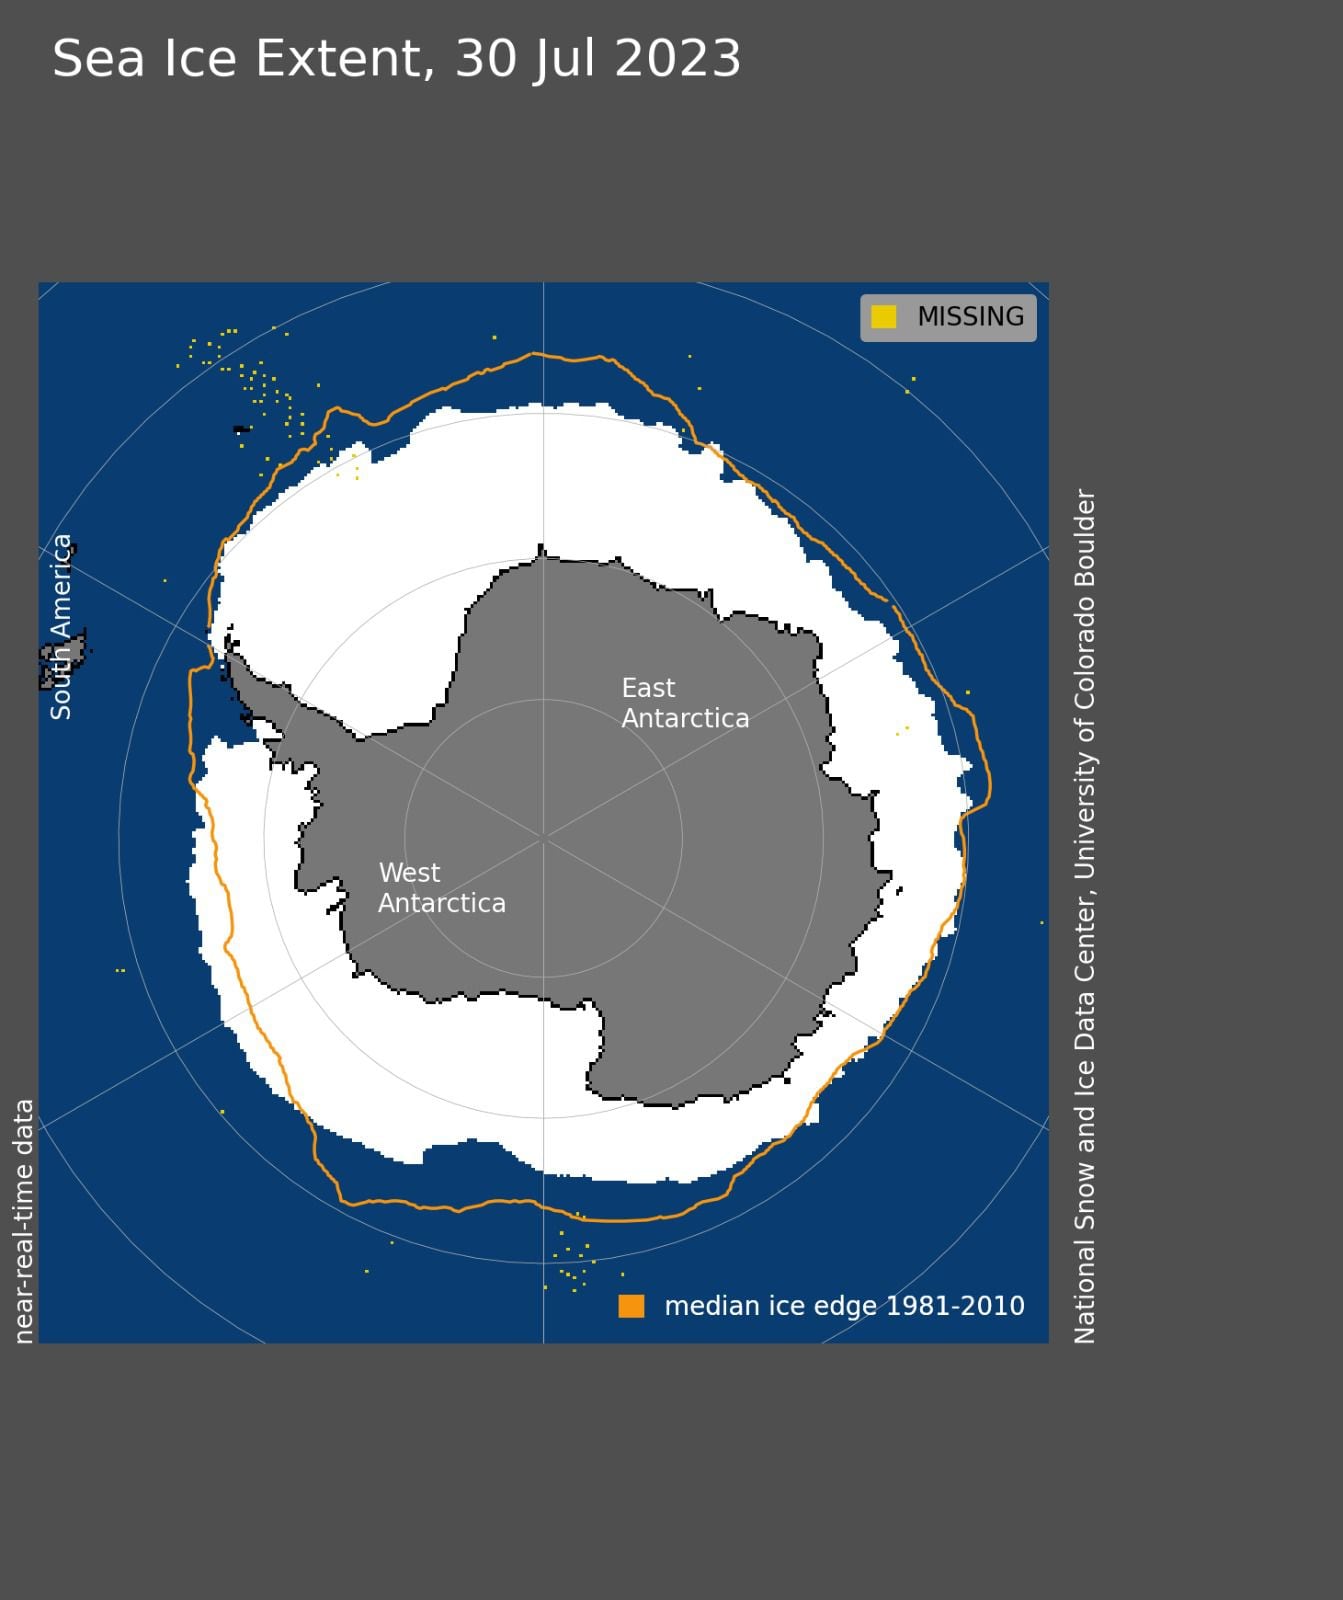 La línea amarilla, según el Centro Nacional de Datos de Hielo y Nieve (NSIDC es la sigla en inglés) de los Estados Unidos, indica el área que debería ocupar el hielo marino de la Antártida en julio de 2023/Archivo